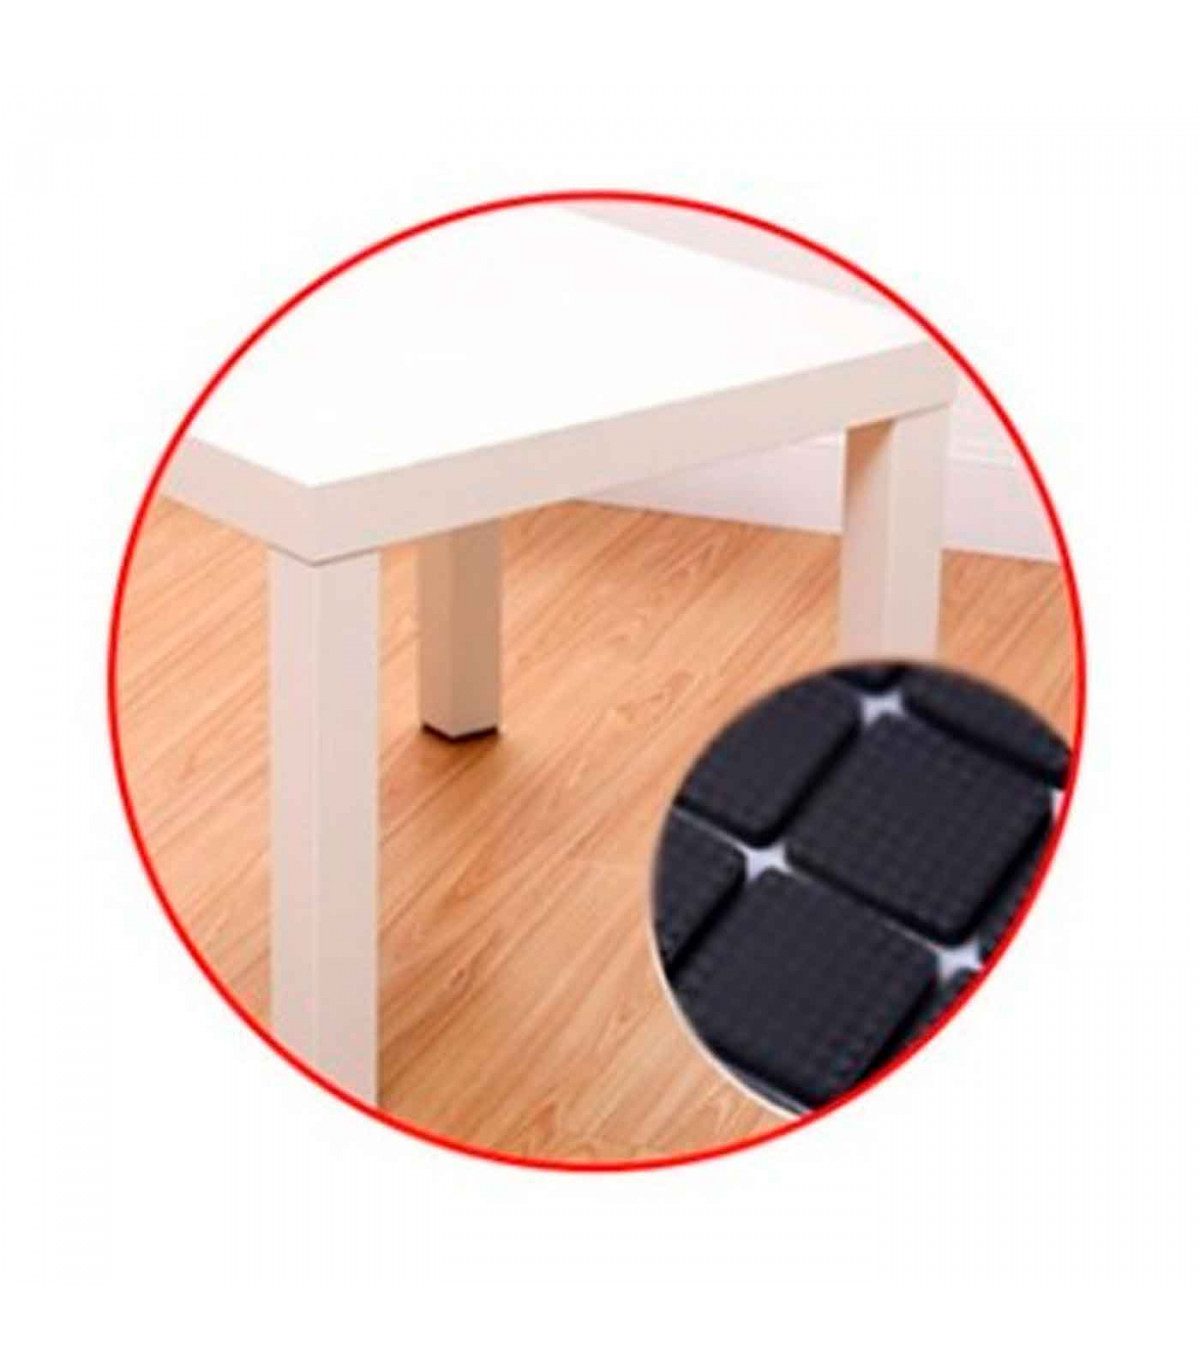 Protectores circulares para patas de sillas, mesas o muebles. 4 fieltros  adhesivos. Protector adhesivo para patas de muebles, fi